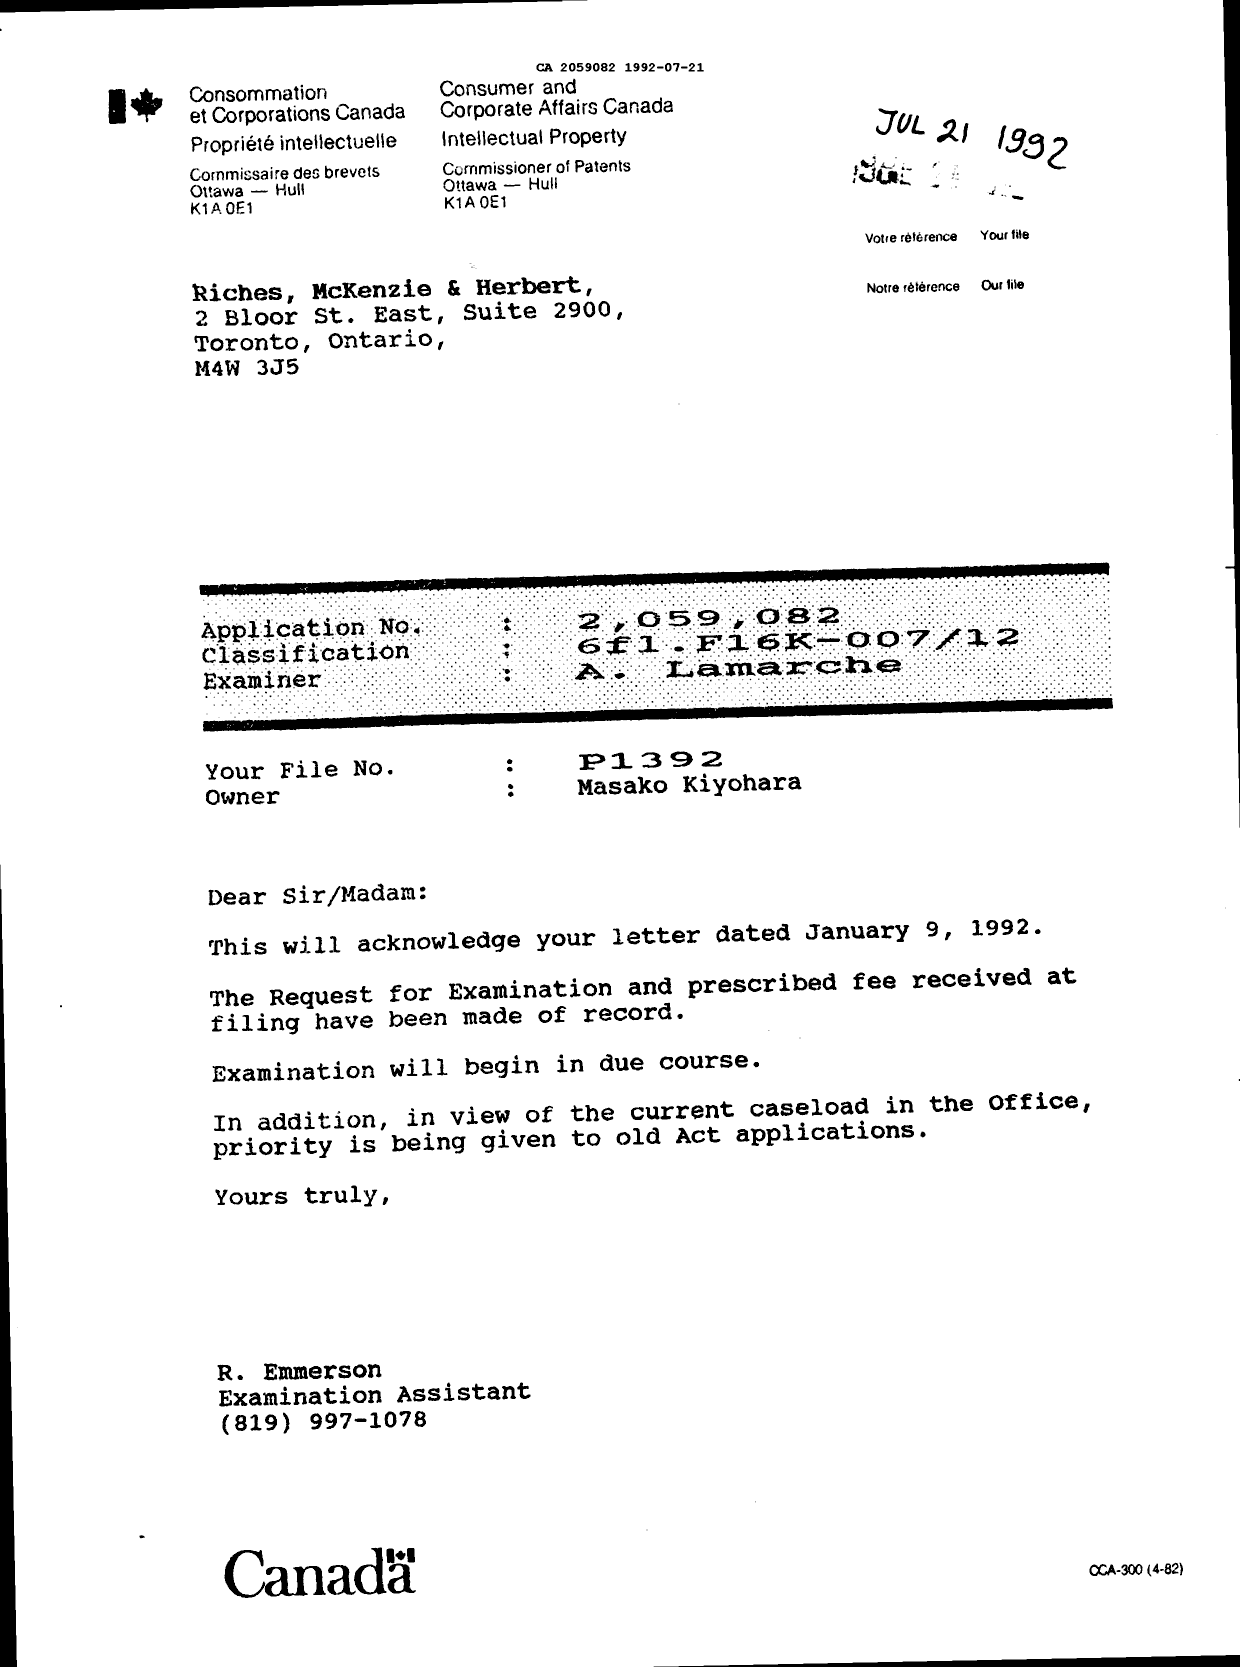 Document de brevet canadien 2059082. Lettre du bureau 19920721. Image 1 de 1